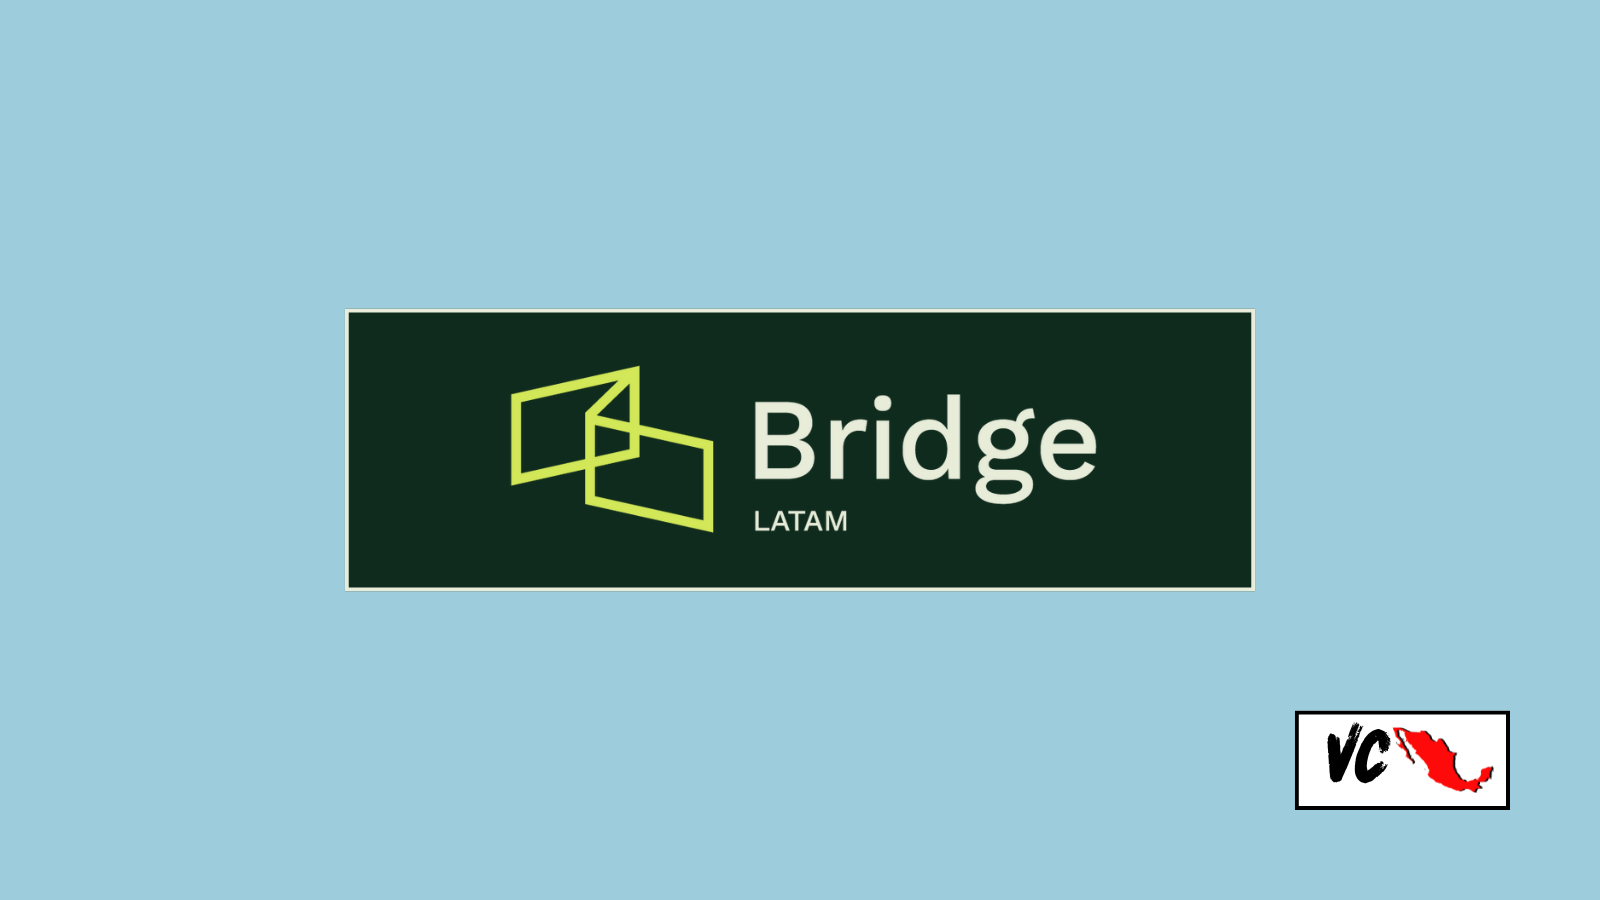 VC Mx: Bridge Latam